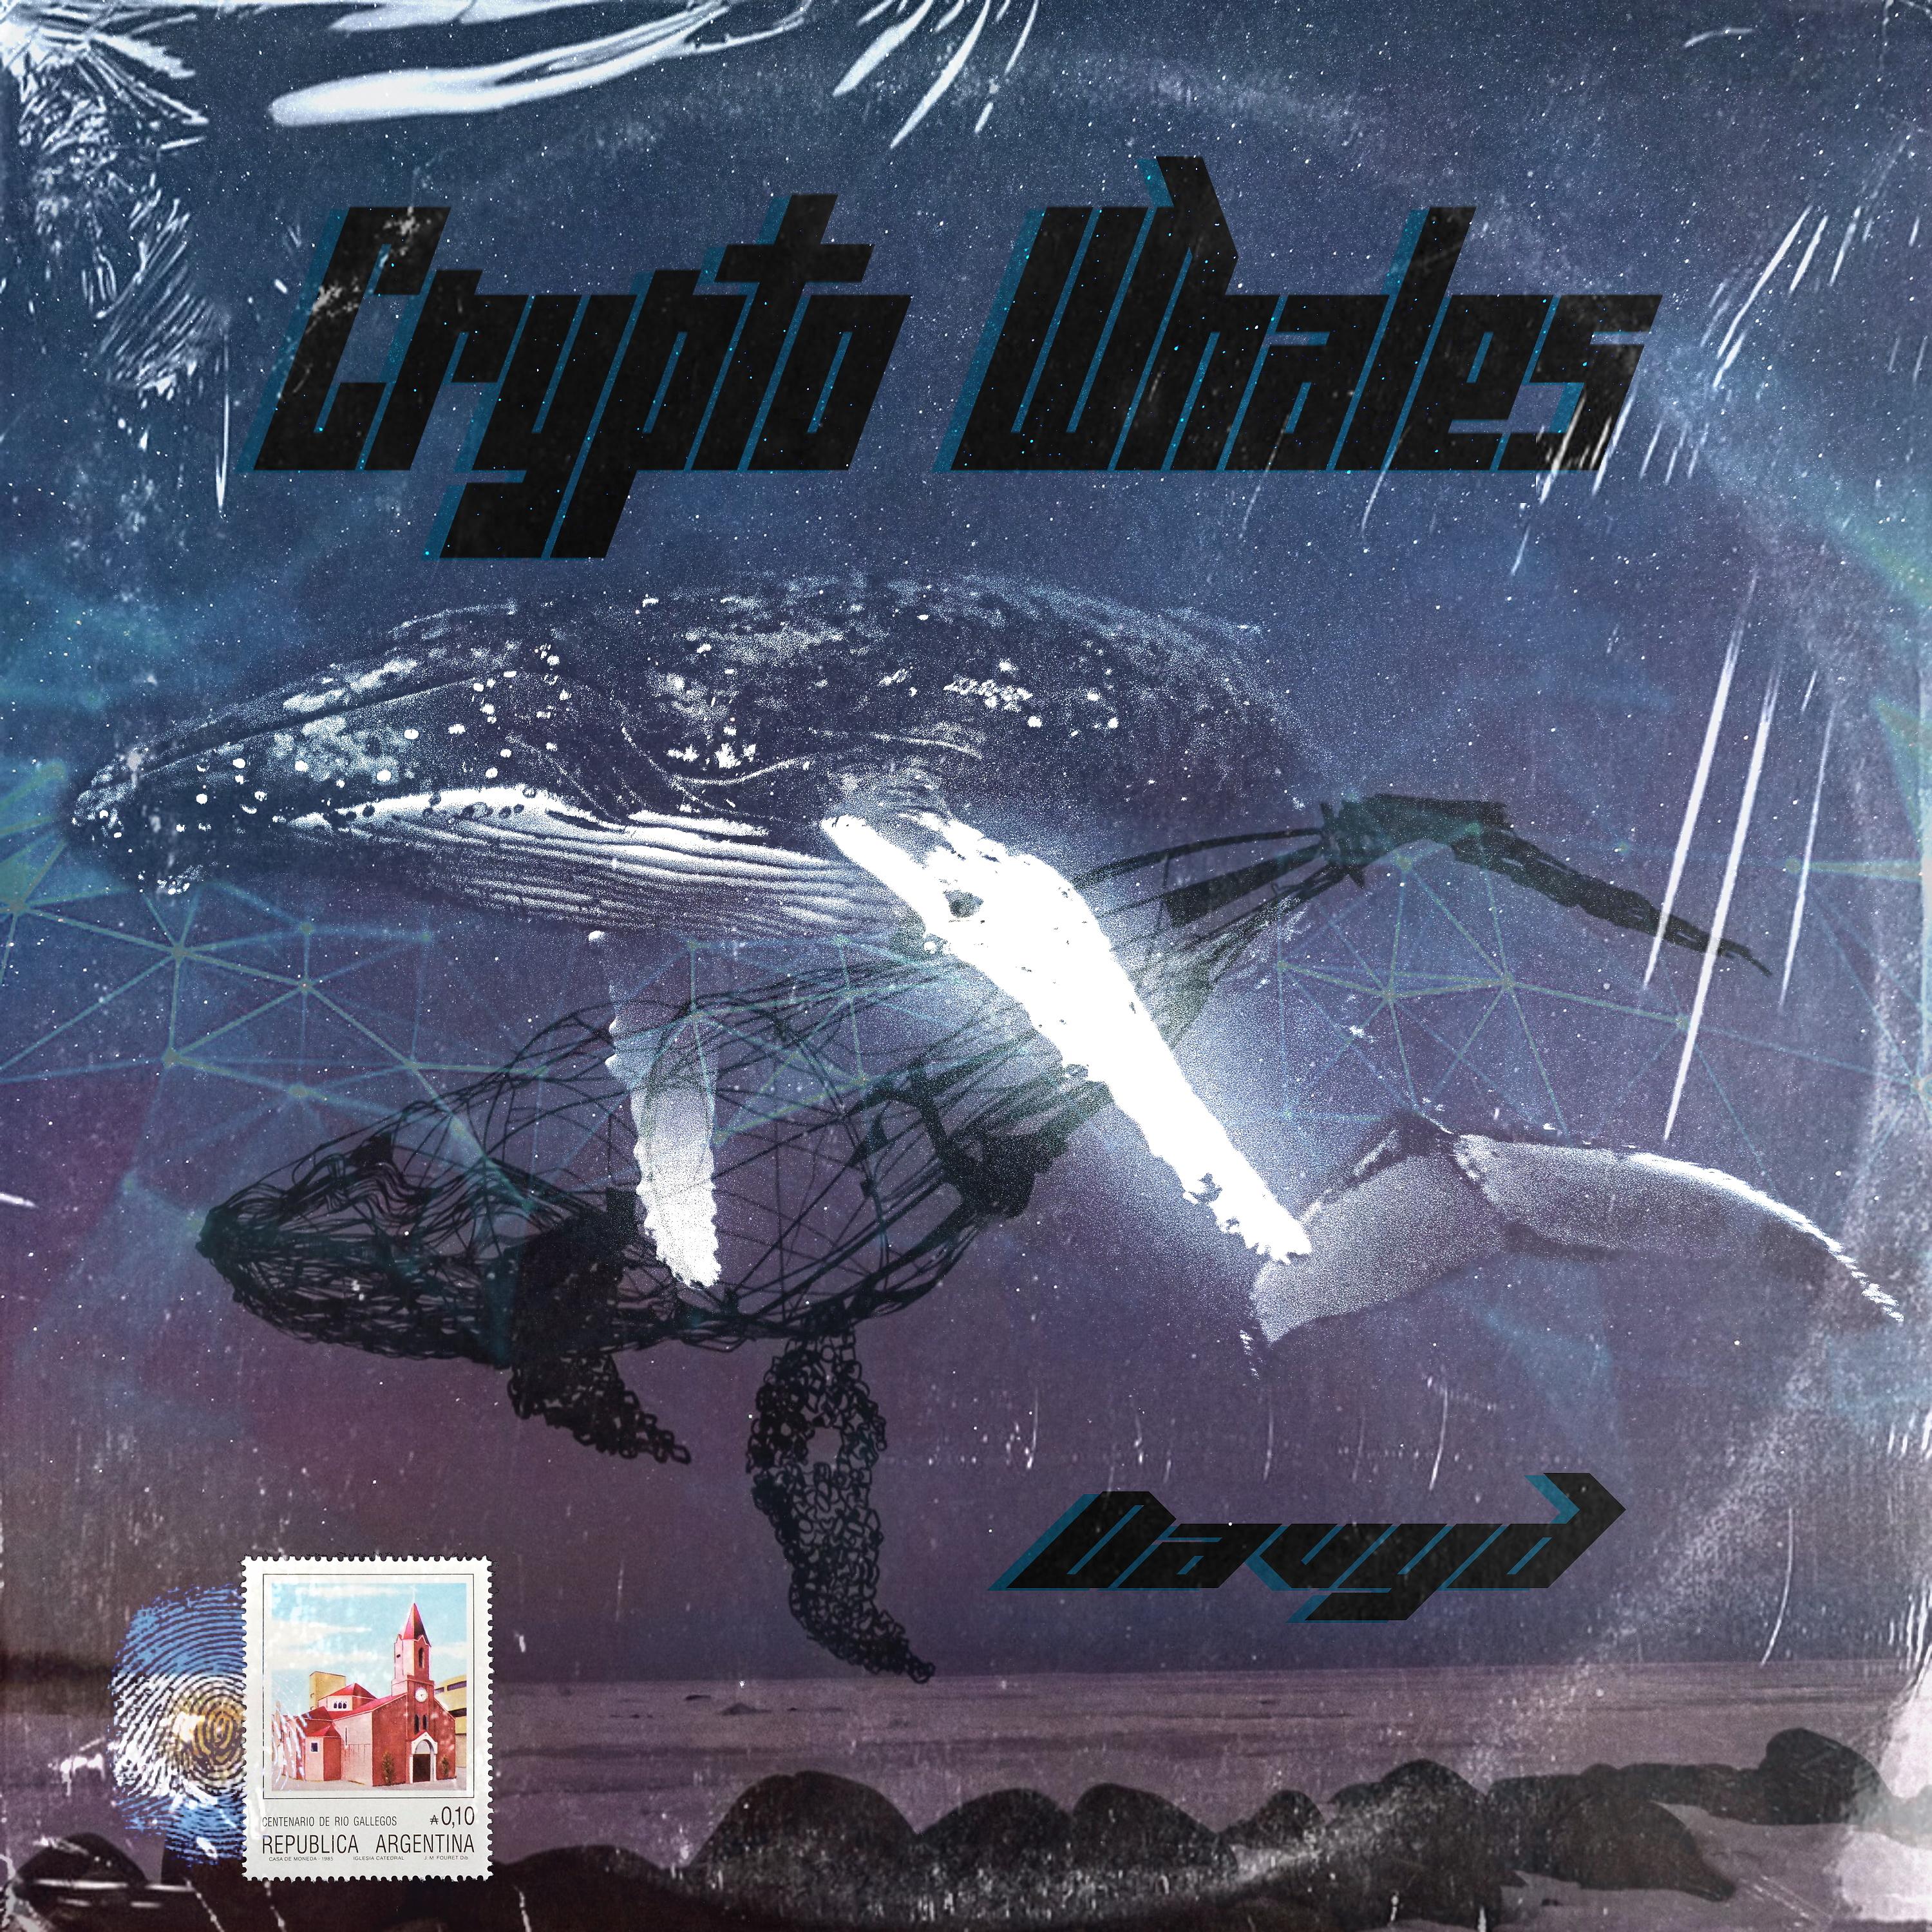 Постер альбома Crypto Whales